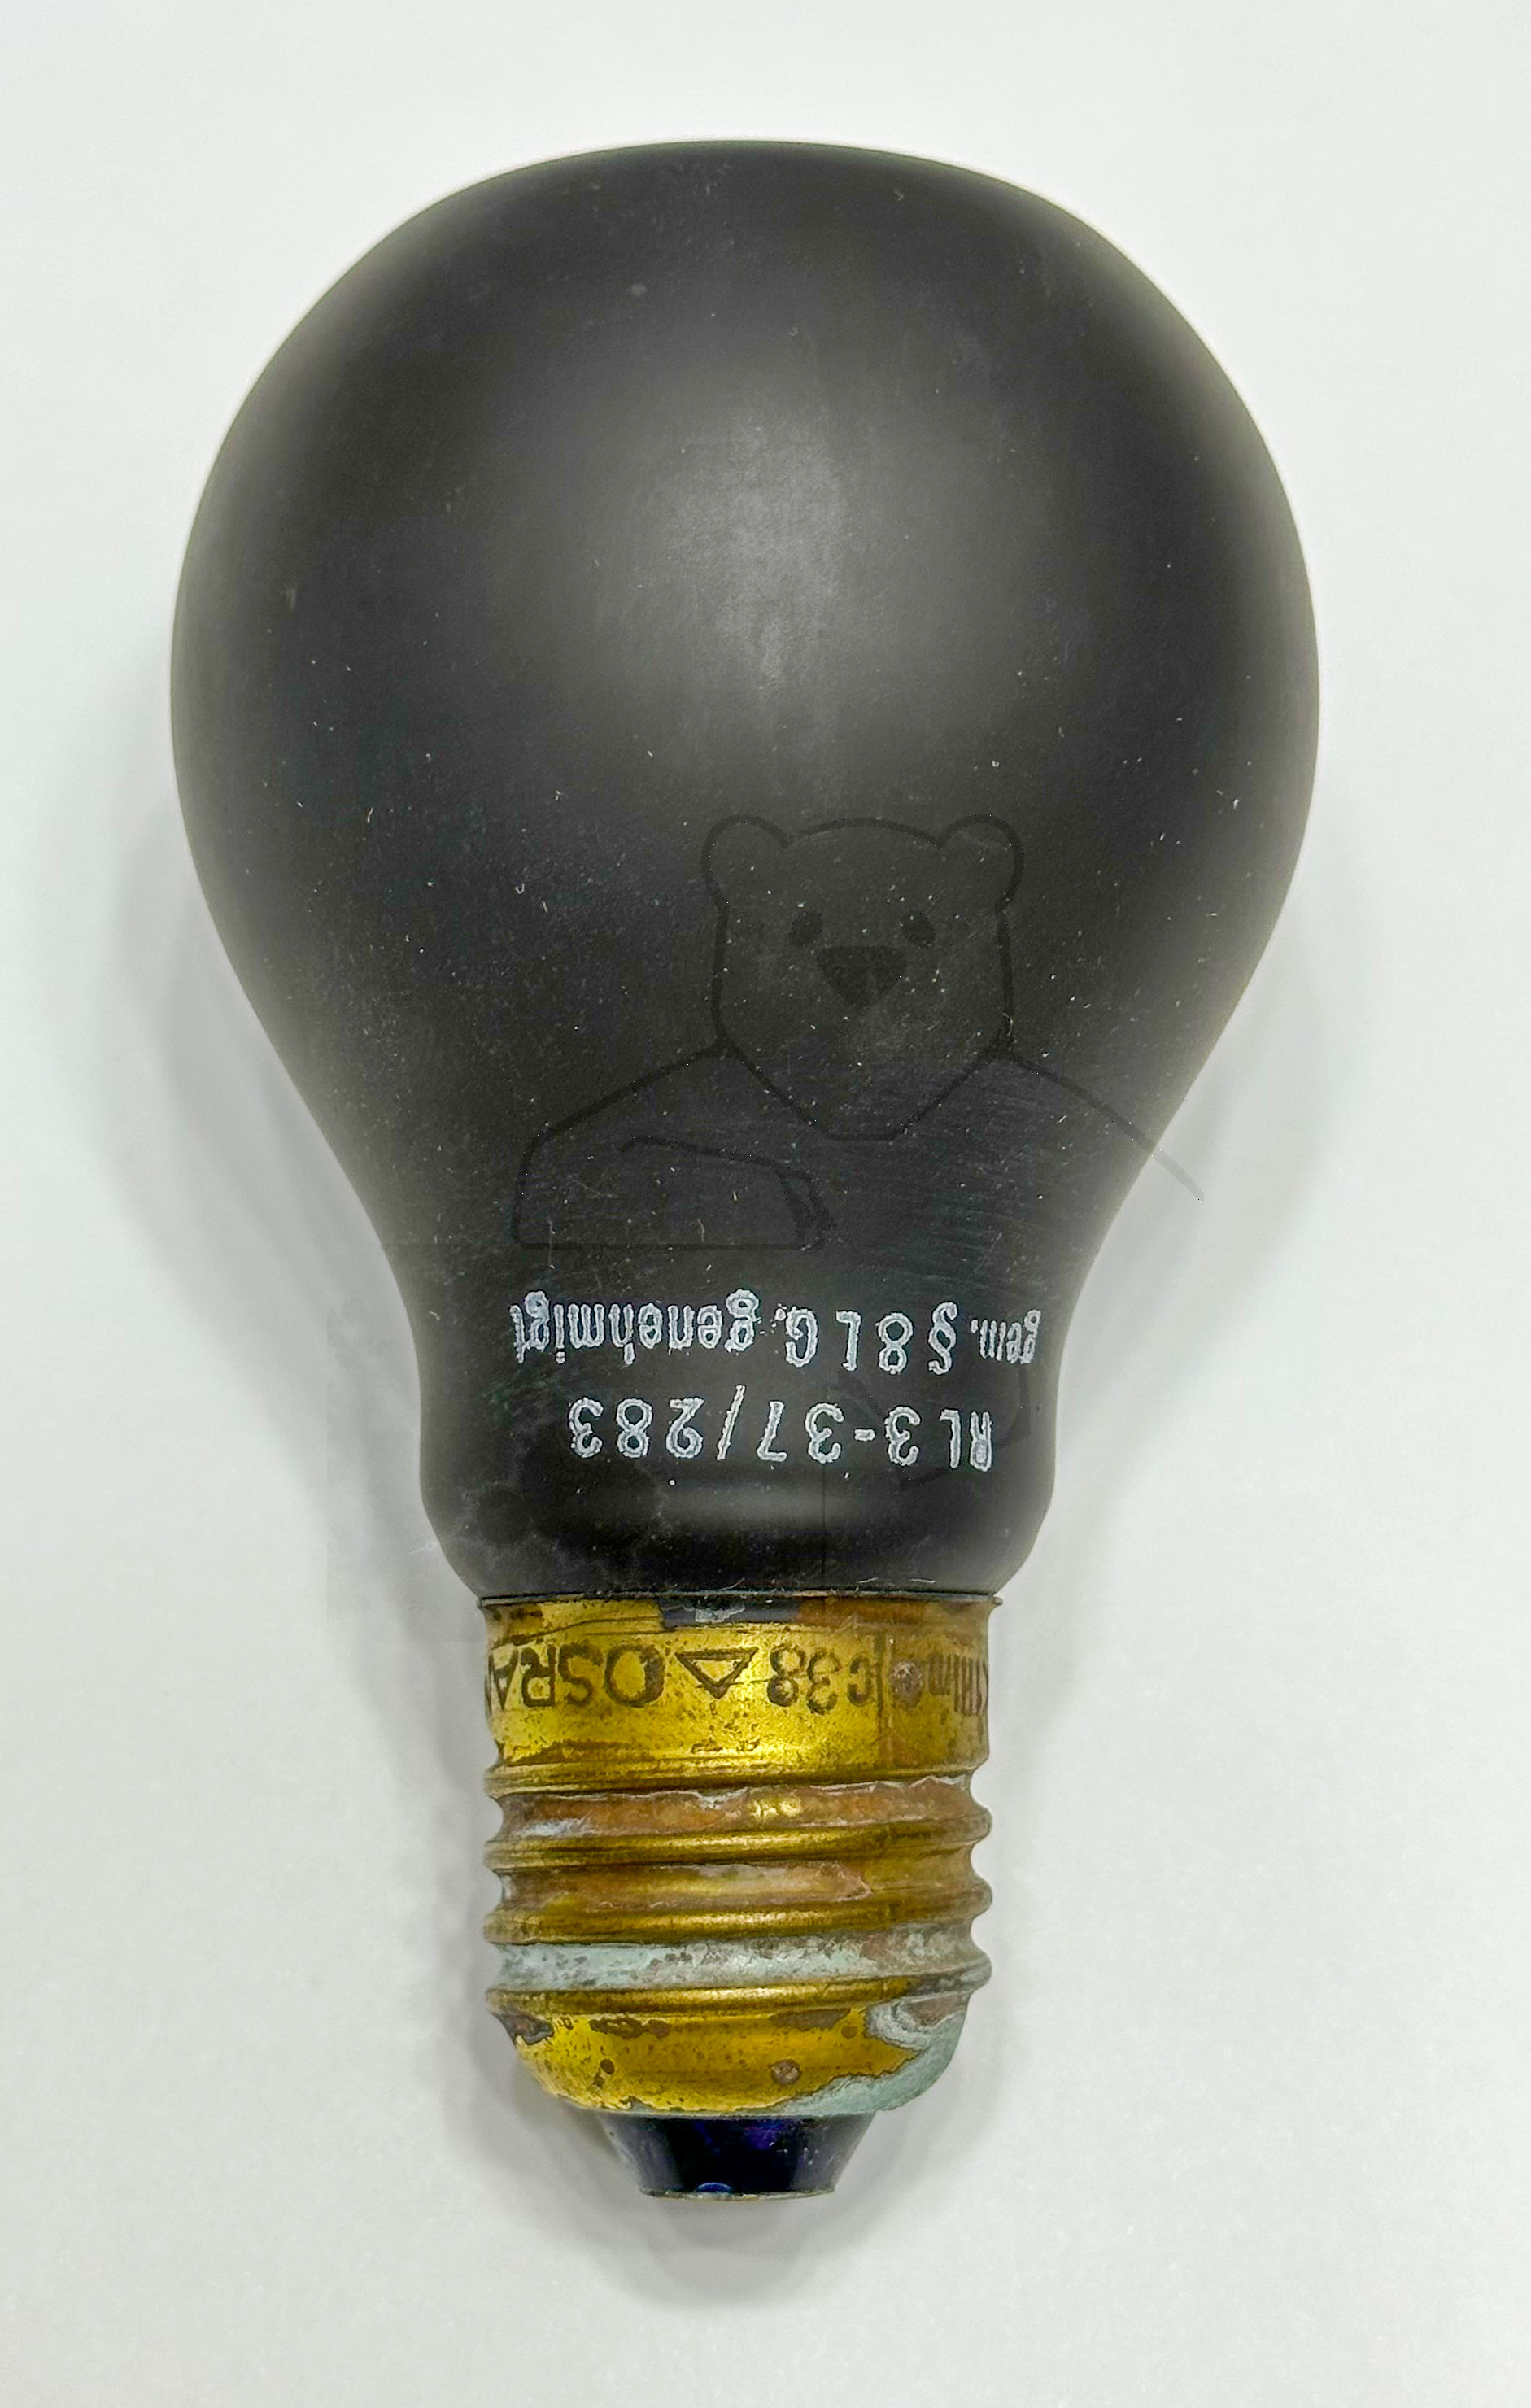 Luftschutzlampe von Osram, ca. 1940 - Seitliche Ansicht